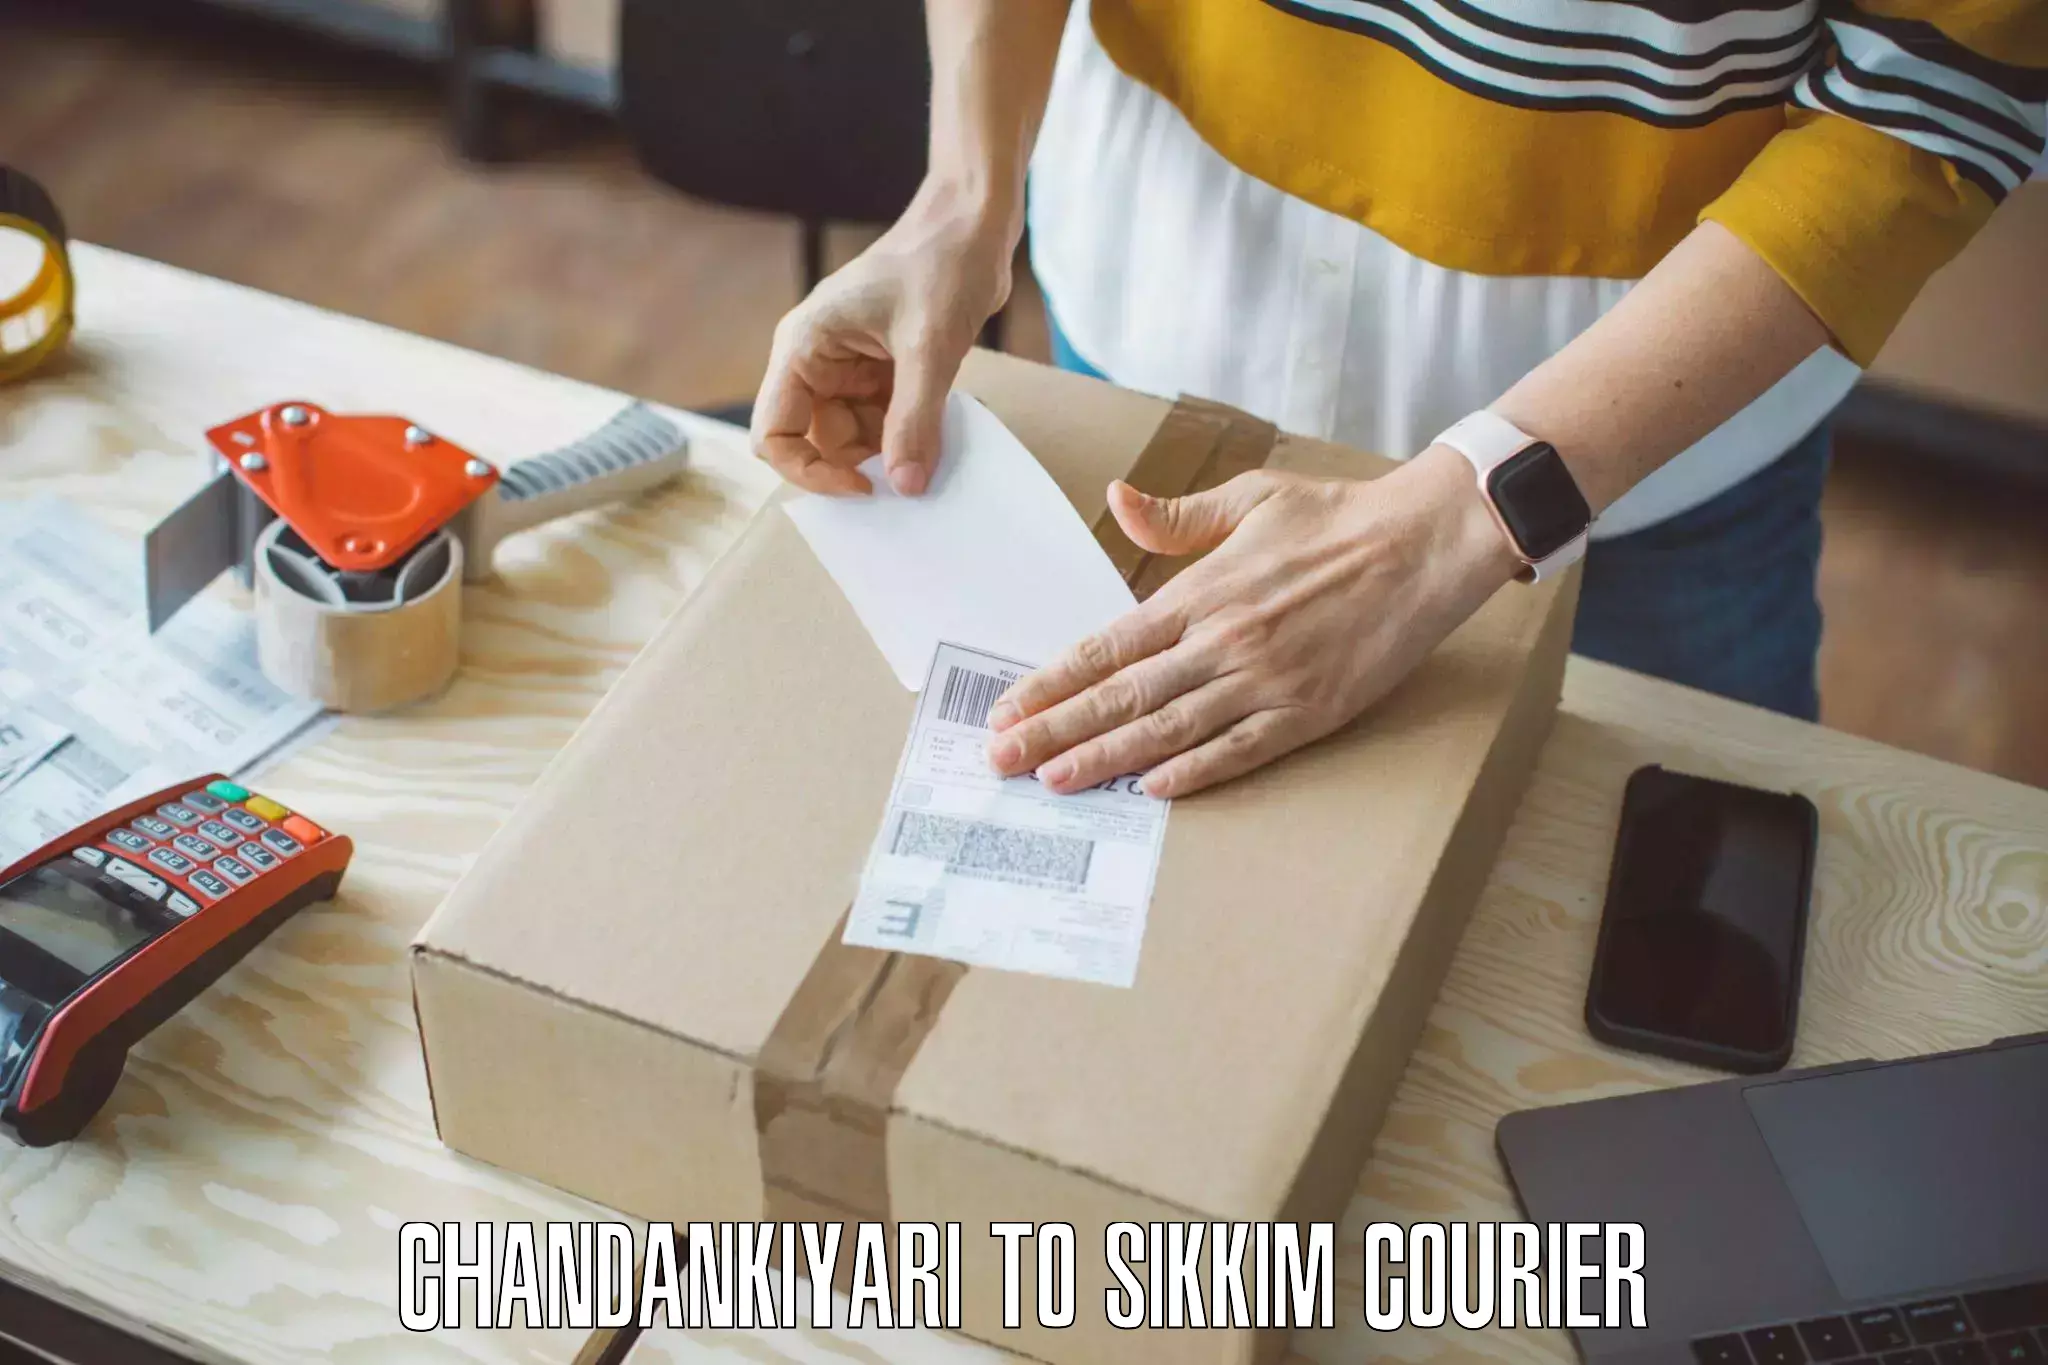 Home goods moving company Chandankiyari to North Sikkim